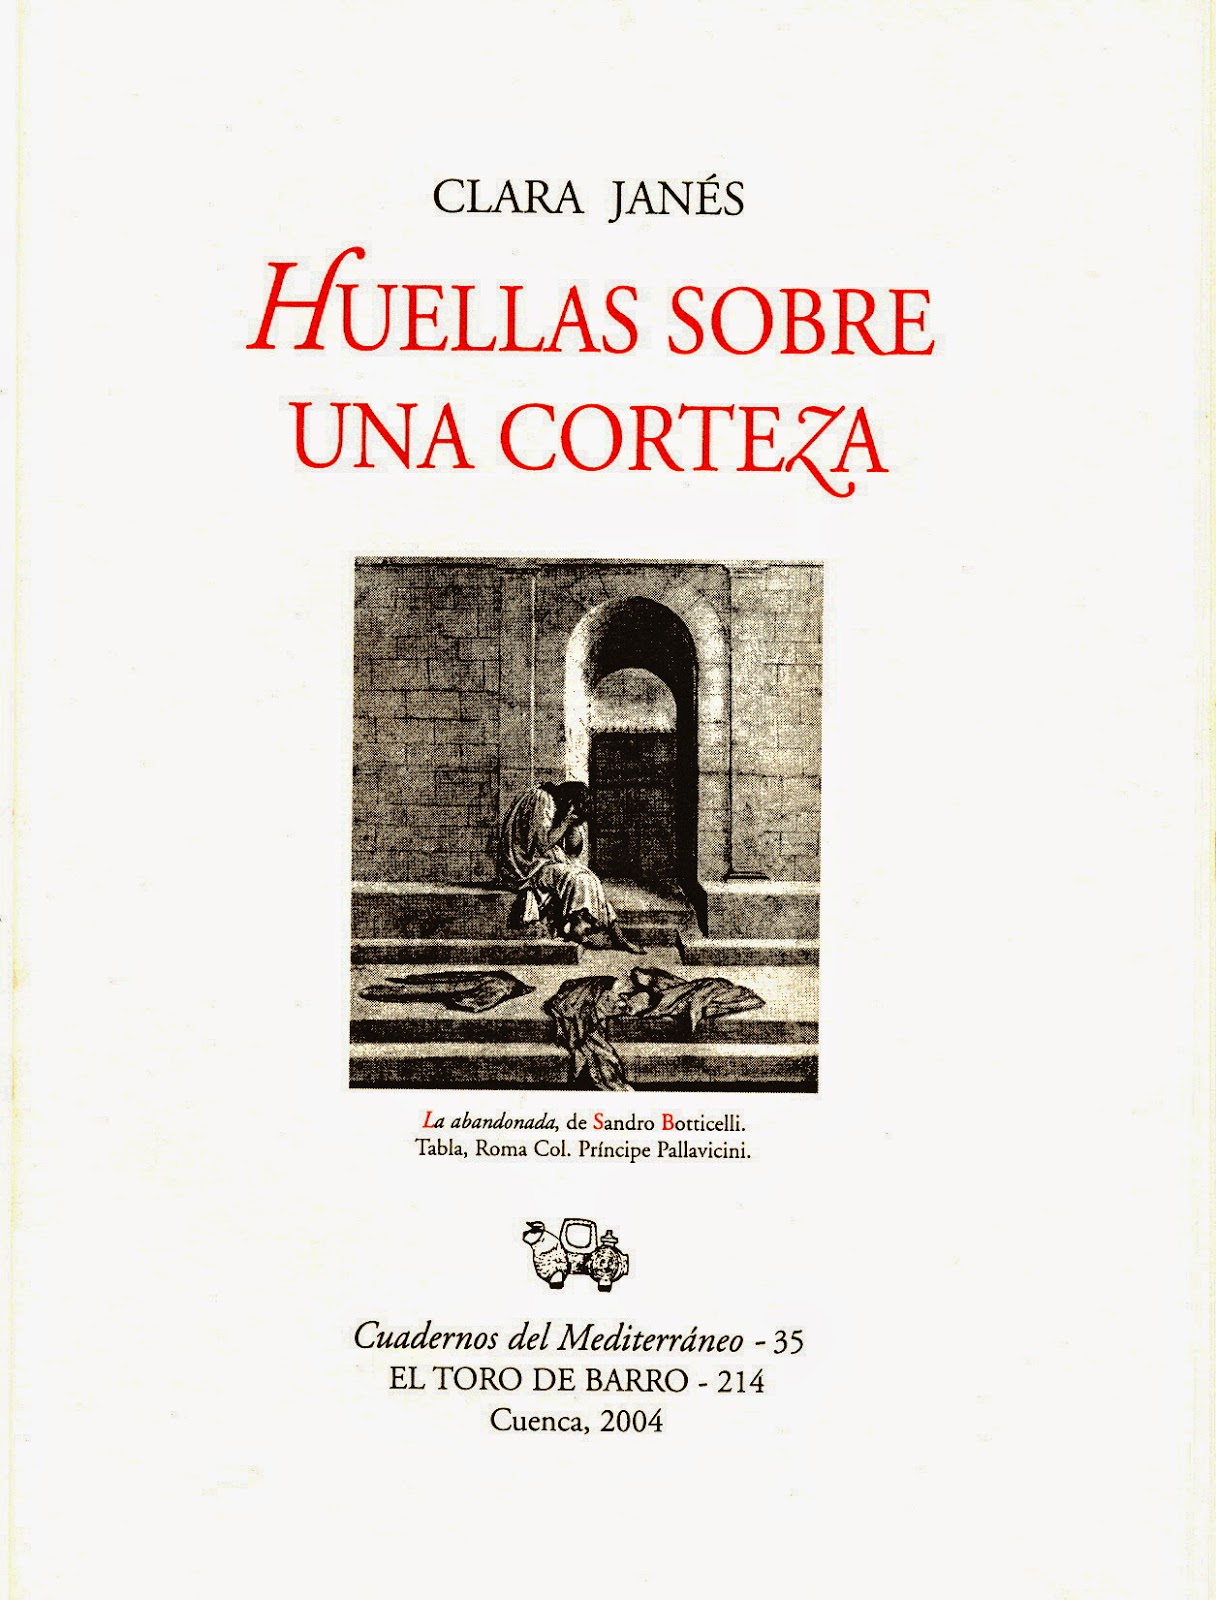 Clara Janés, "Huellas sobre una corteza". Col «Cuadernos del Mediterráneo»,. Carlos Morales Ed. Ed. El Toro de Barro, Tarancón de Cuenca 2004.